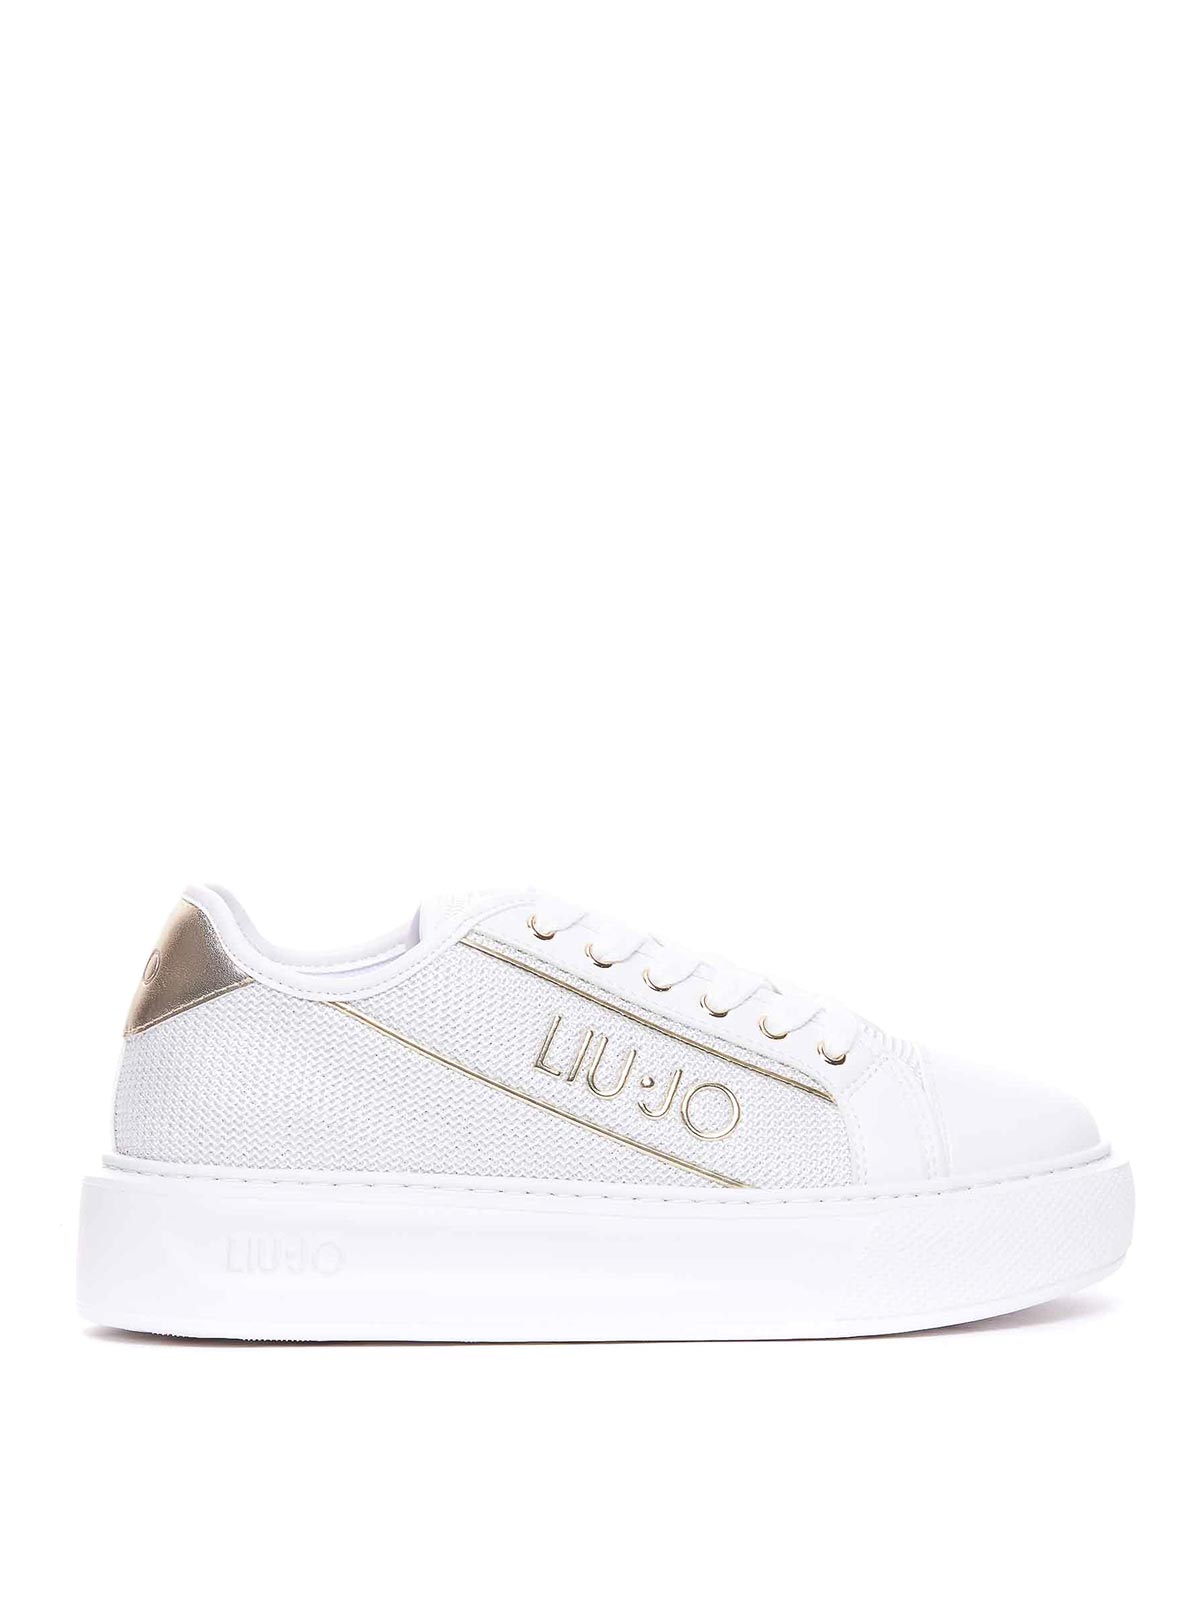 Liu •jo Kylie Sneakers In White